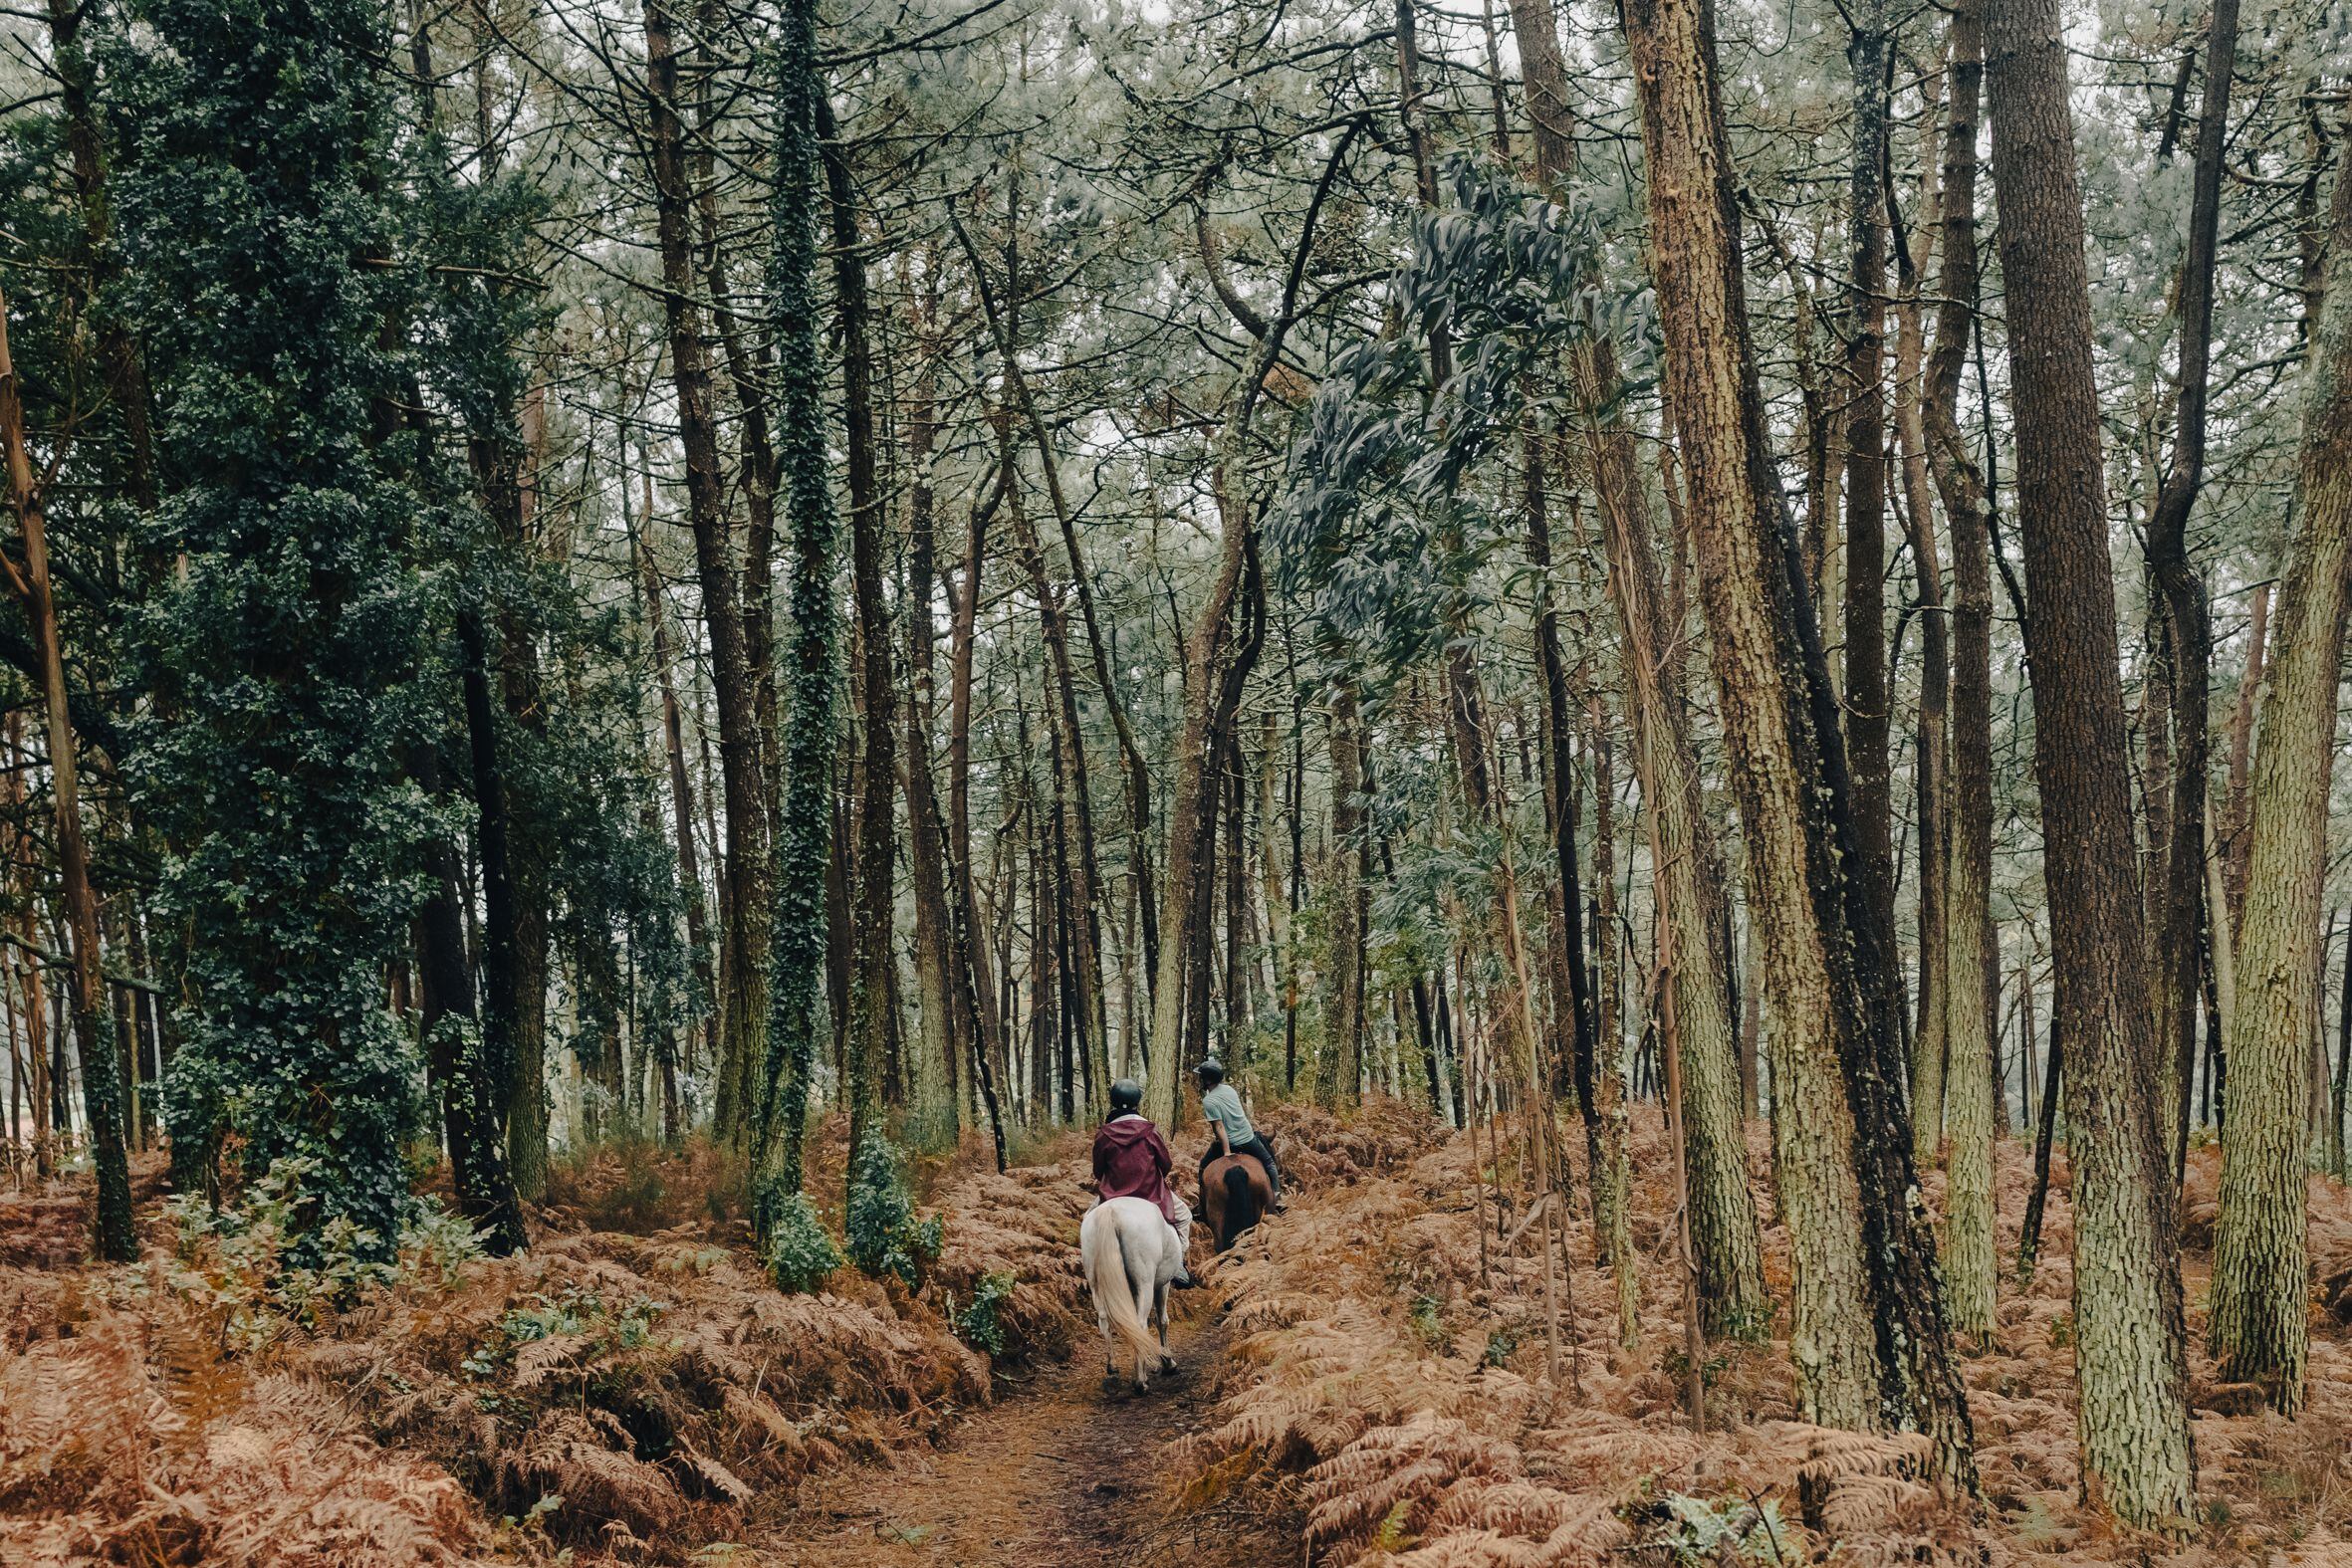 El instructor Brais Martínez, en el caballo que lidera la marcha, y un visitante transitan por una zona boscosa en Leis de Nemancos (Muxía).